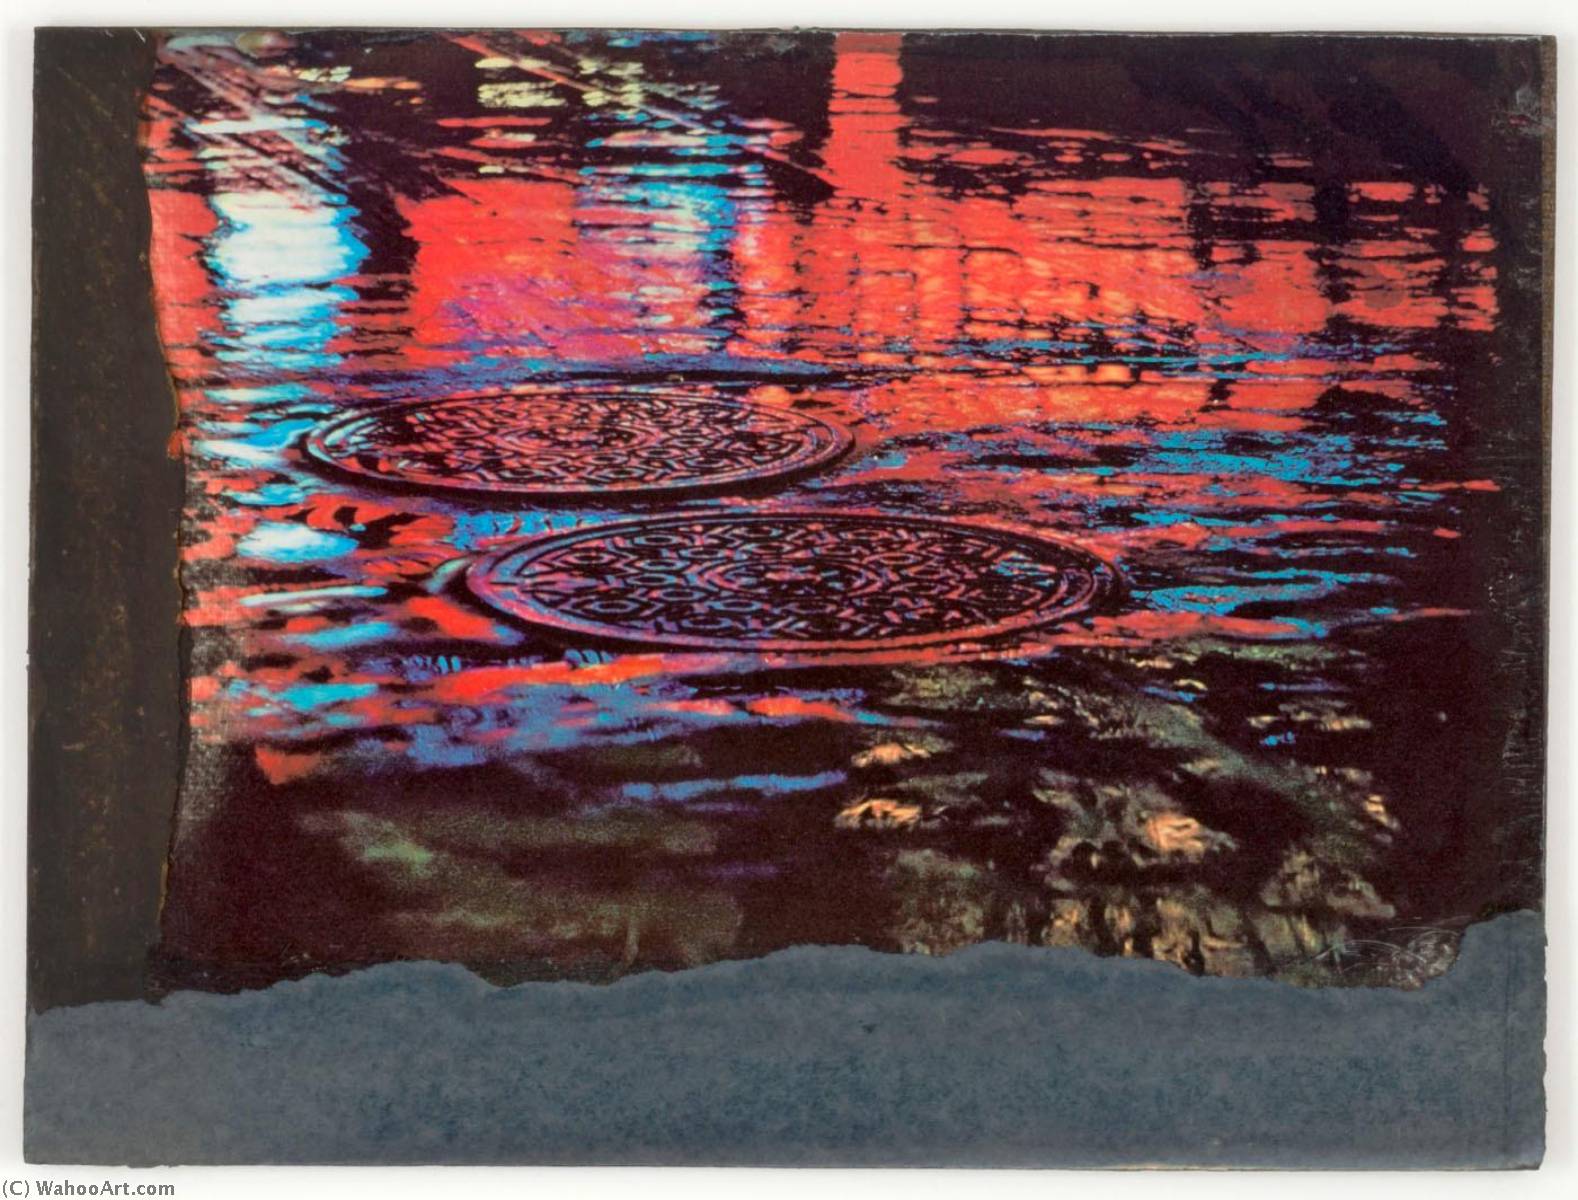 Wikioo.org - Bách khoa toàn thư về mỹ thuật - Vẽ tranh, Tác phẩm nghệ thuật Joseph Cornell - Untitled (red and blue reflections on sewer covers in wet street)